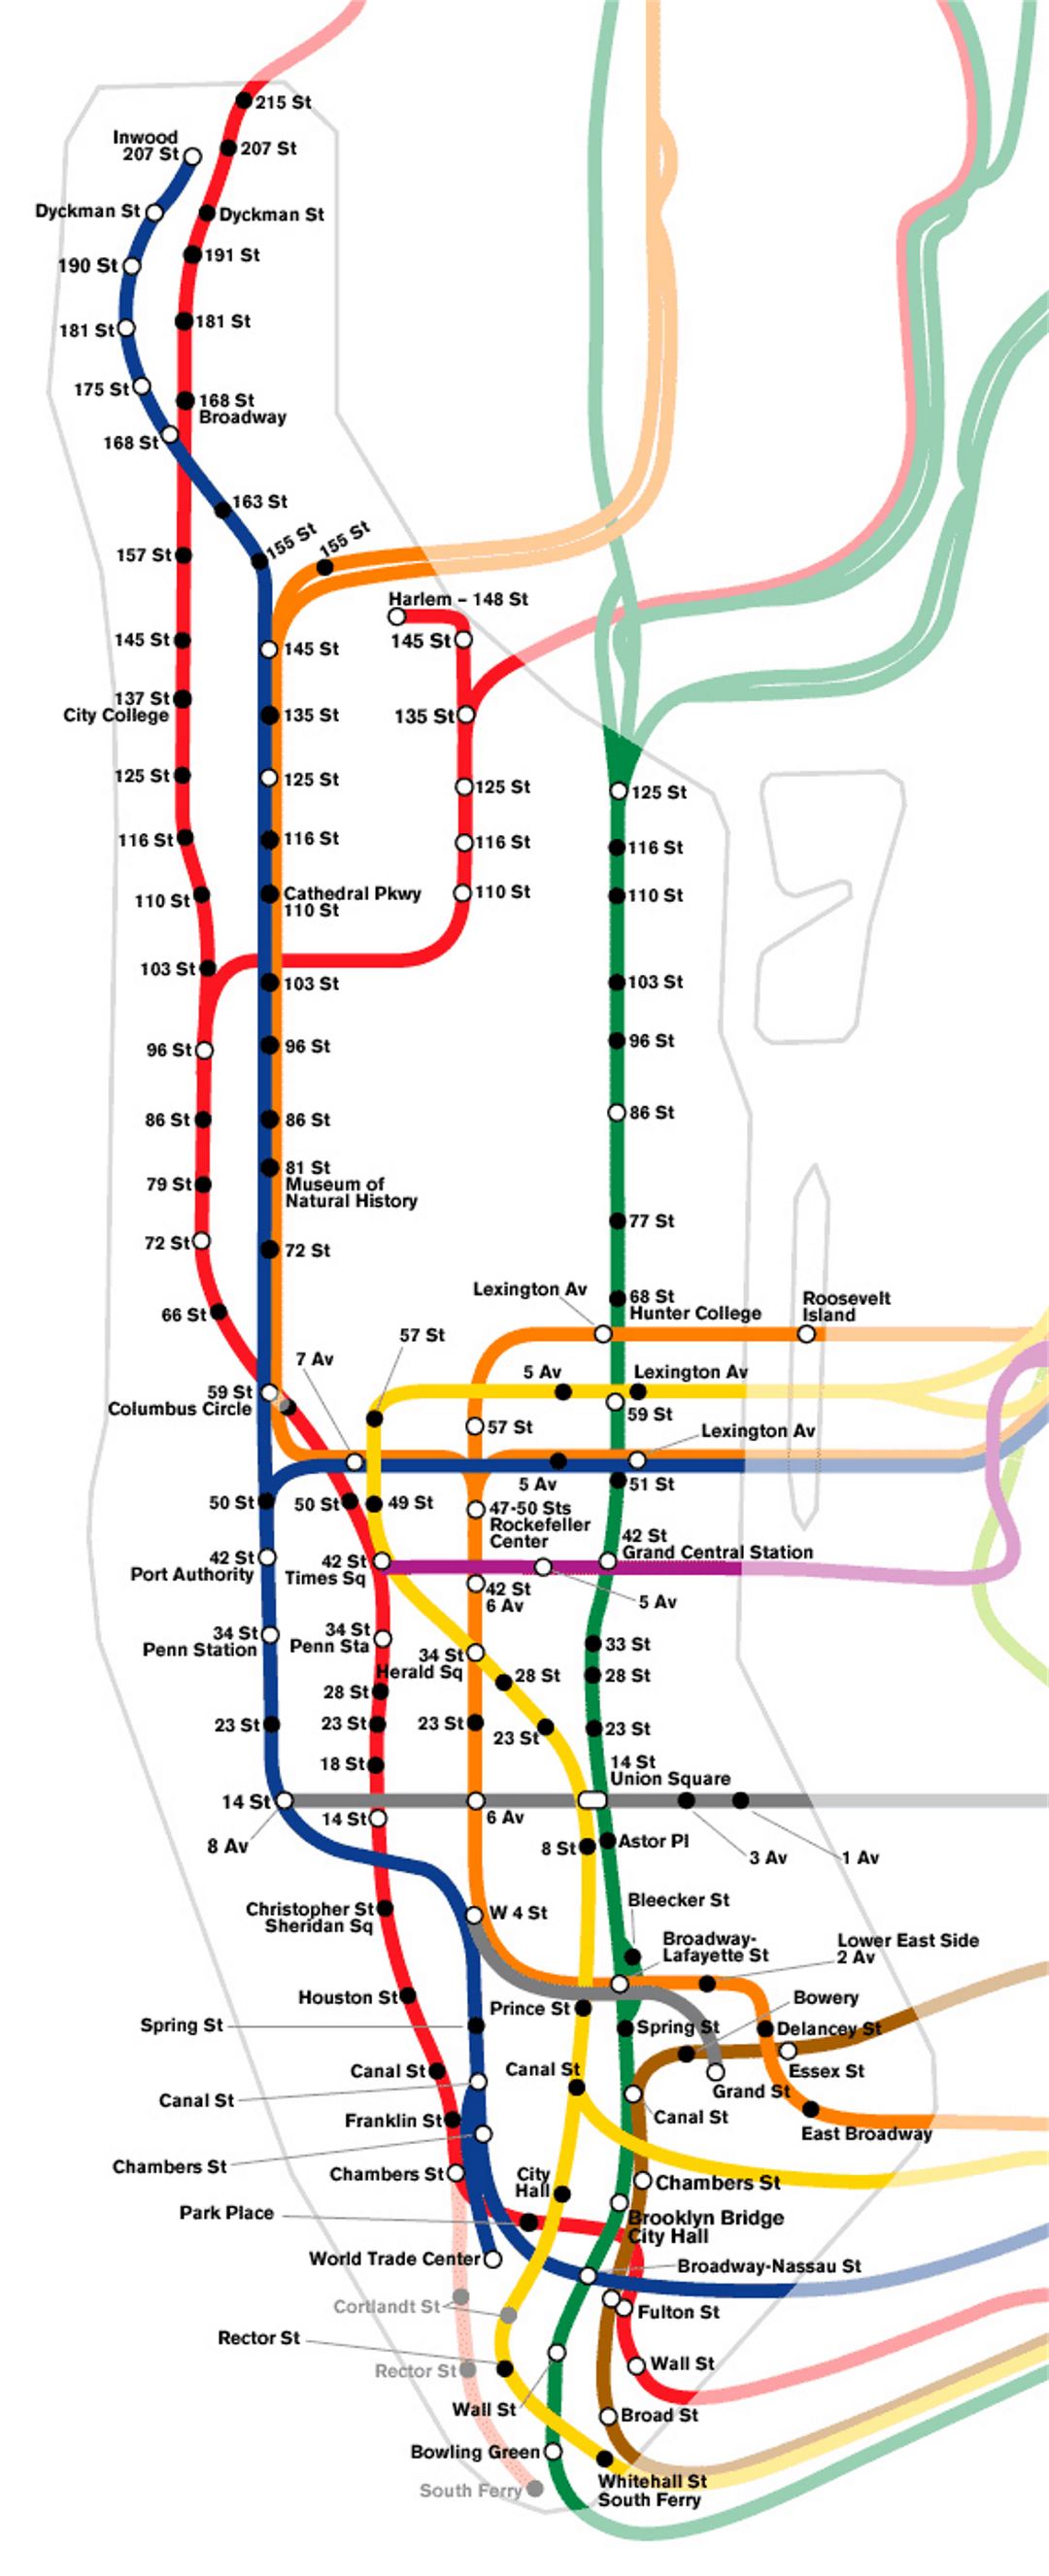 Схематическая карта метро Манхэттена